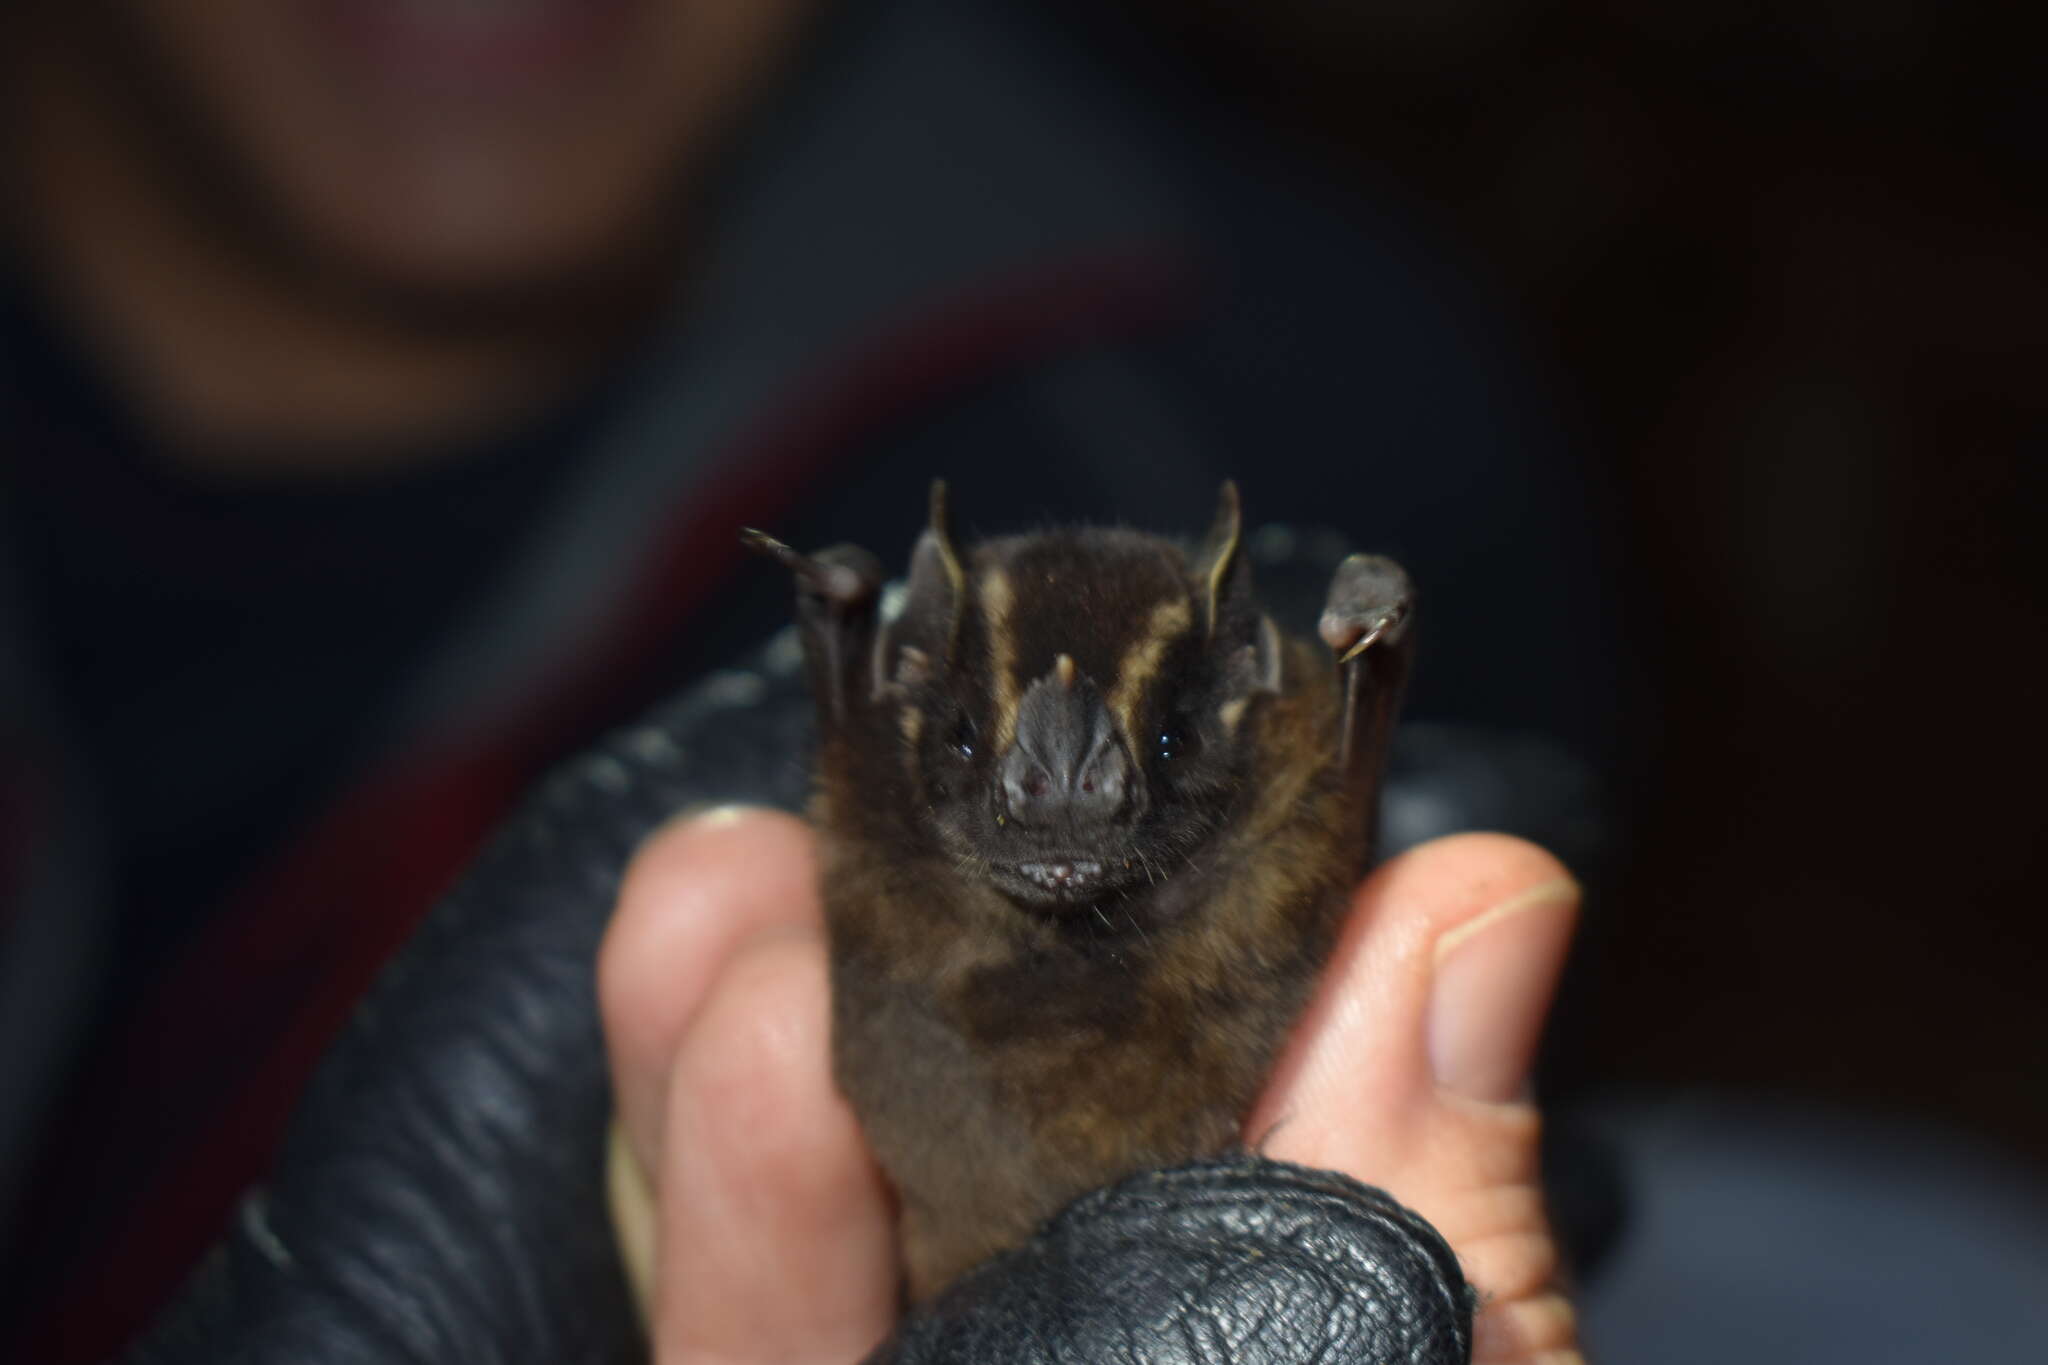 Image of Velvety Fruit-eating Bat